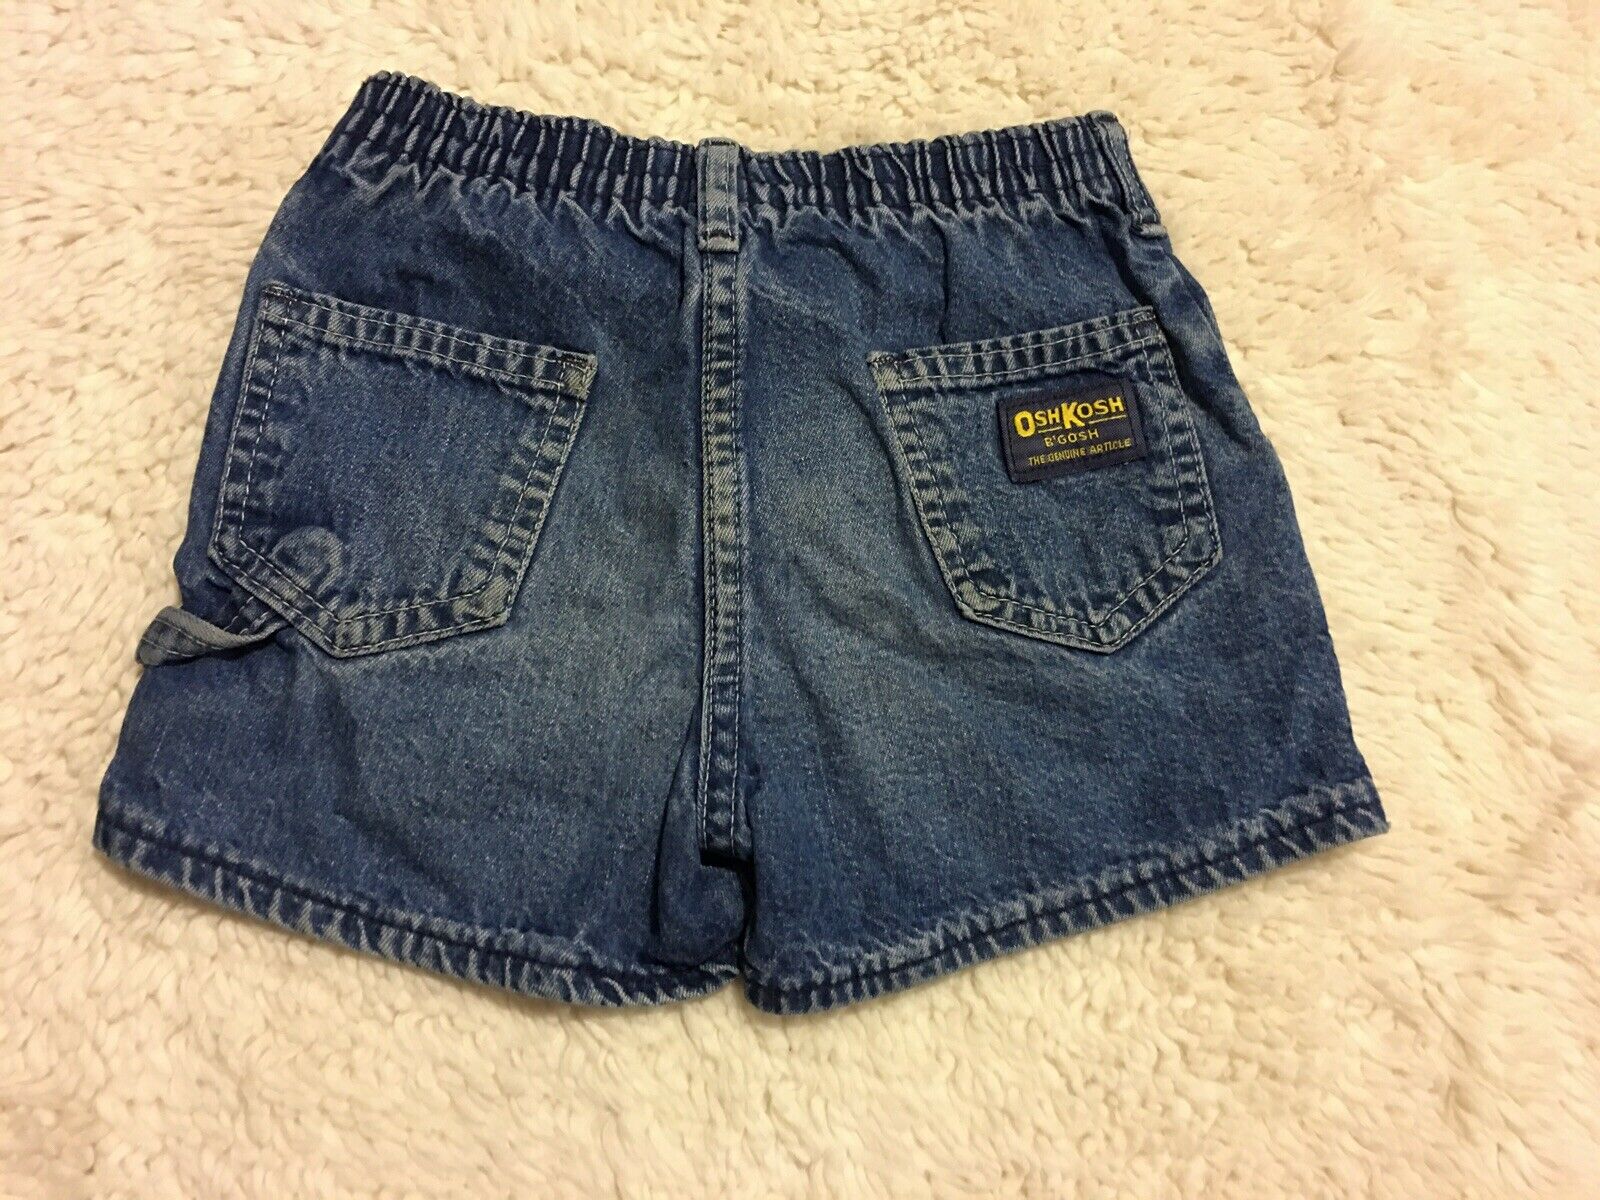 Vintage Size 4t Oshkosh Denim Shorts